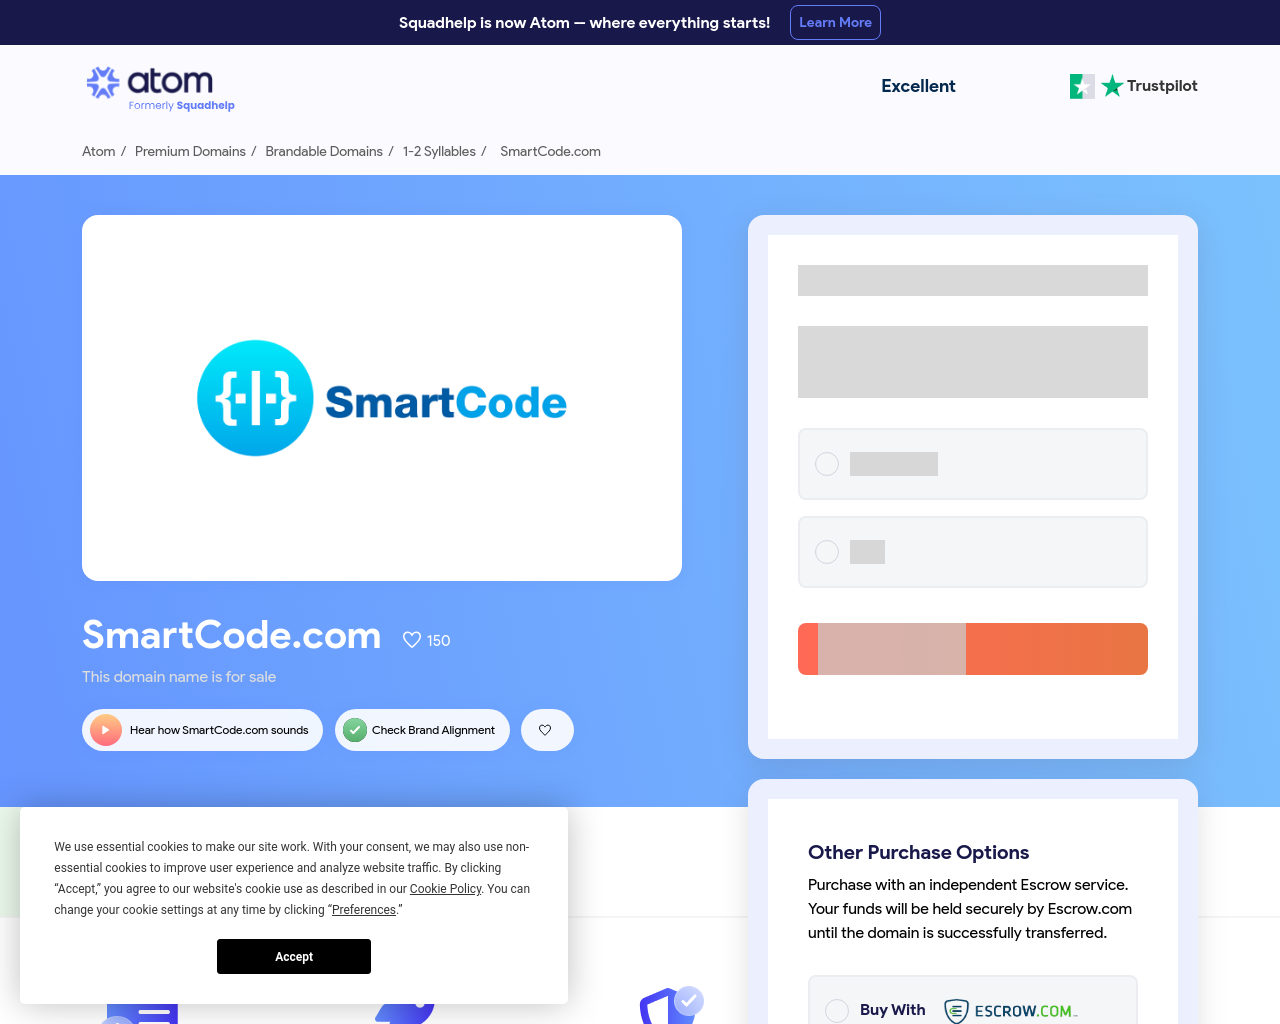 smartcode.com